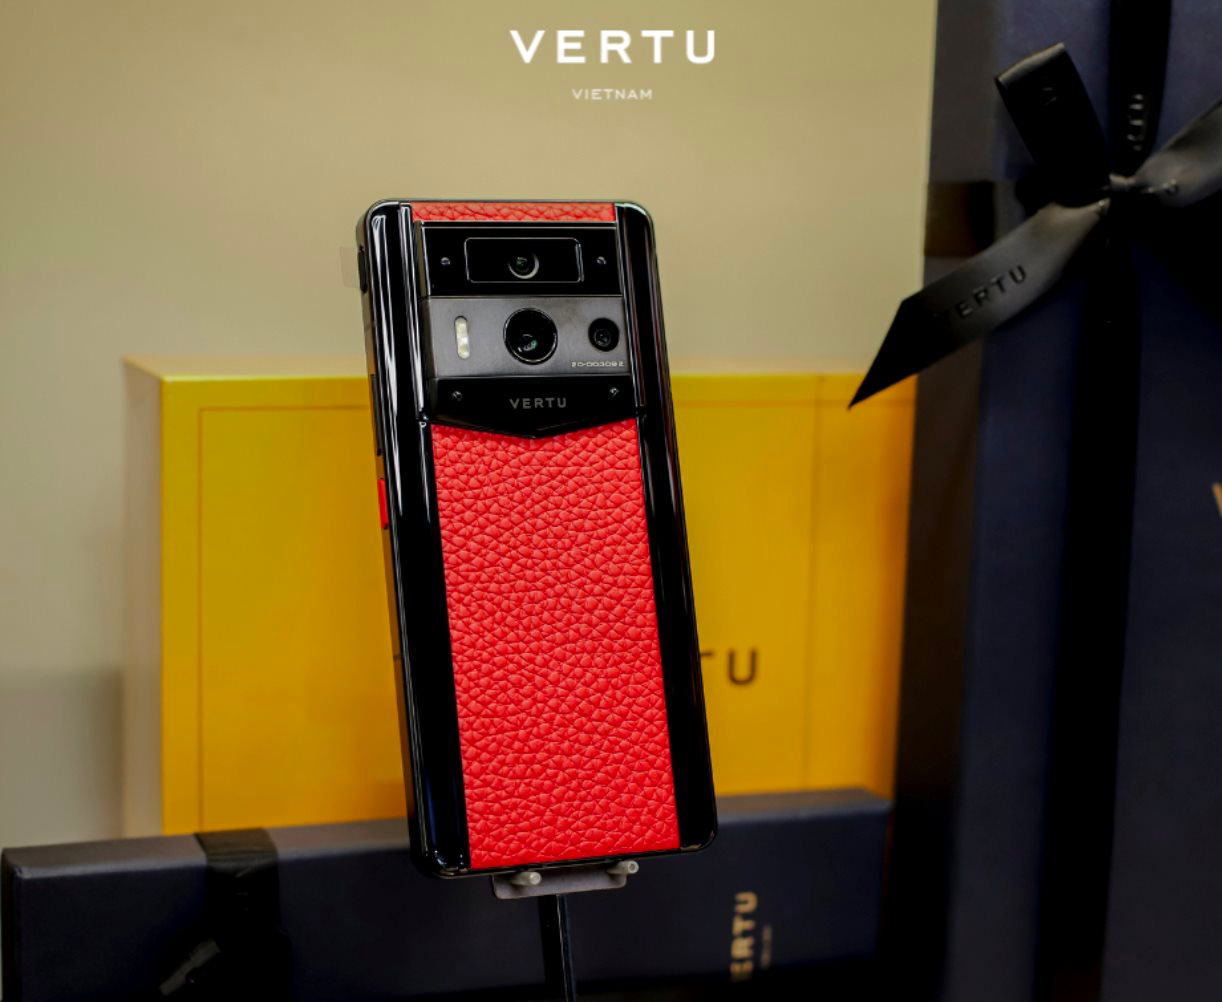 Vertu - "Trùm" điện thoại xa xỉ với giá hơn 2 tỷ/chiếc tăng hiện diện tại Việt Nam: Mở flagship store thứ 3 tại trung tâm Sài Gòn, tung dòng smatphone giá chỉ 100 triệu/chiếc gây sốt